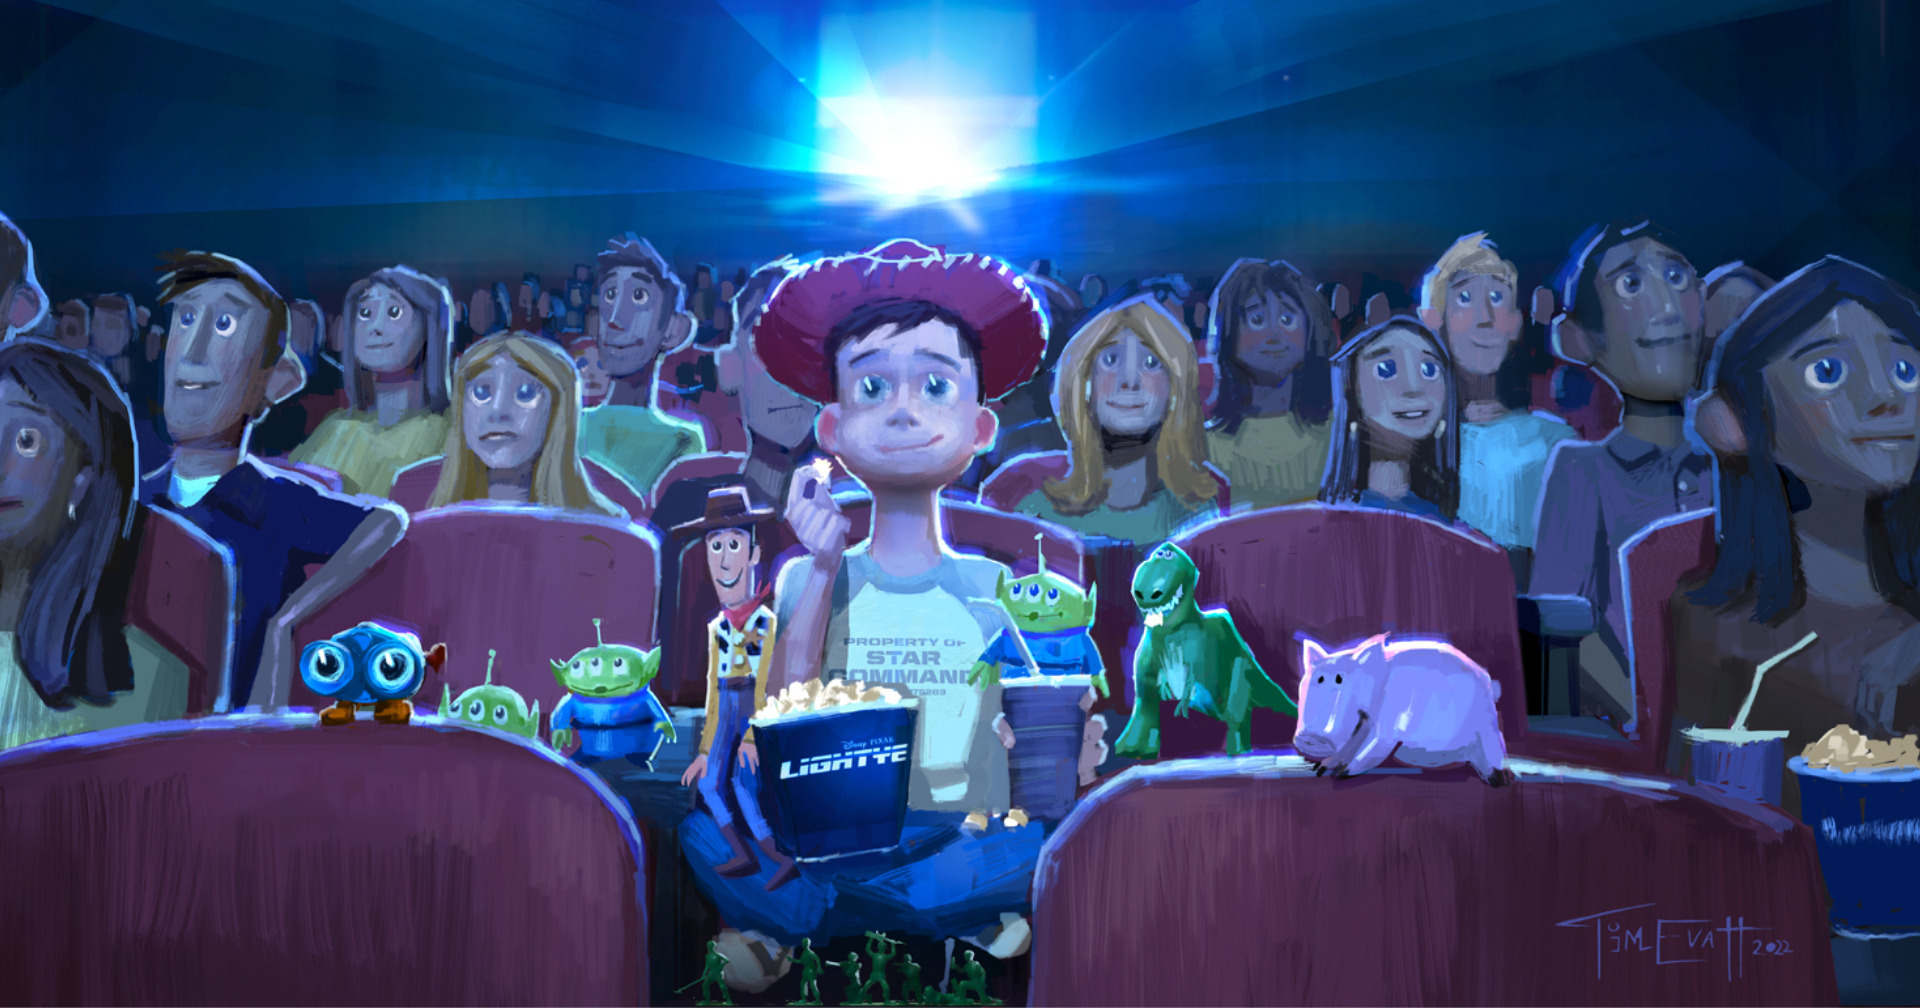 ในวันที่ Pixar พลิกวงการภาพยนตร์แอนิเมชันด้วย ‘Toy Story’